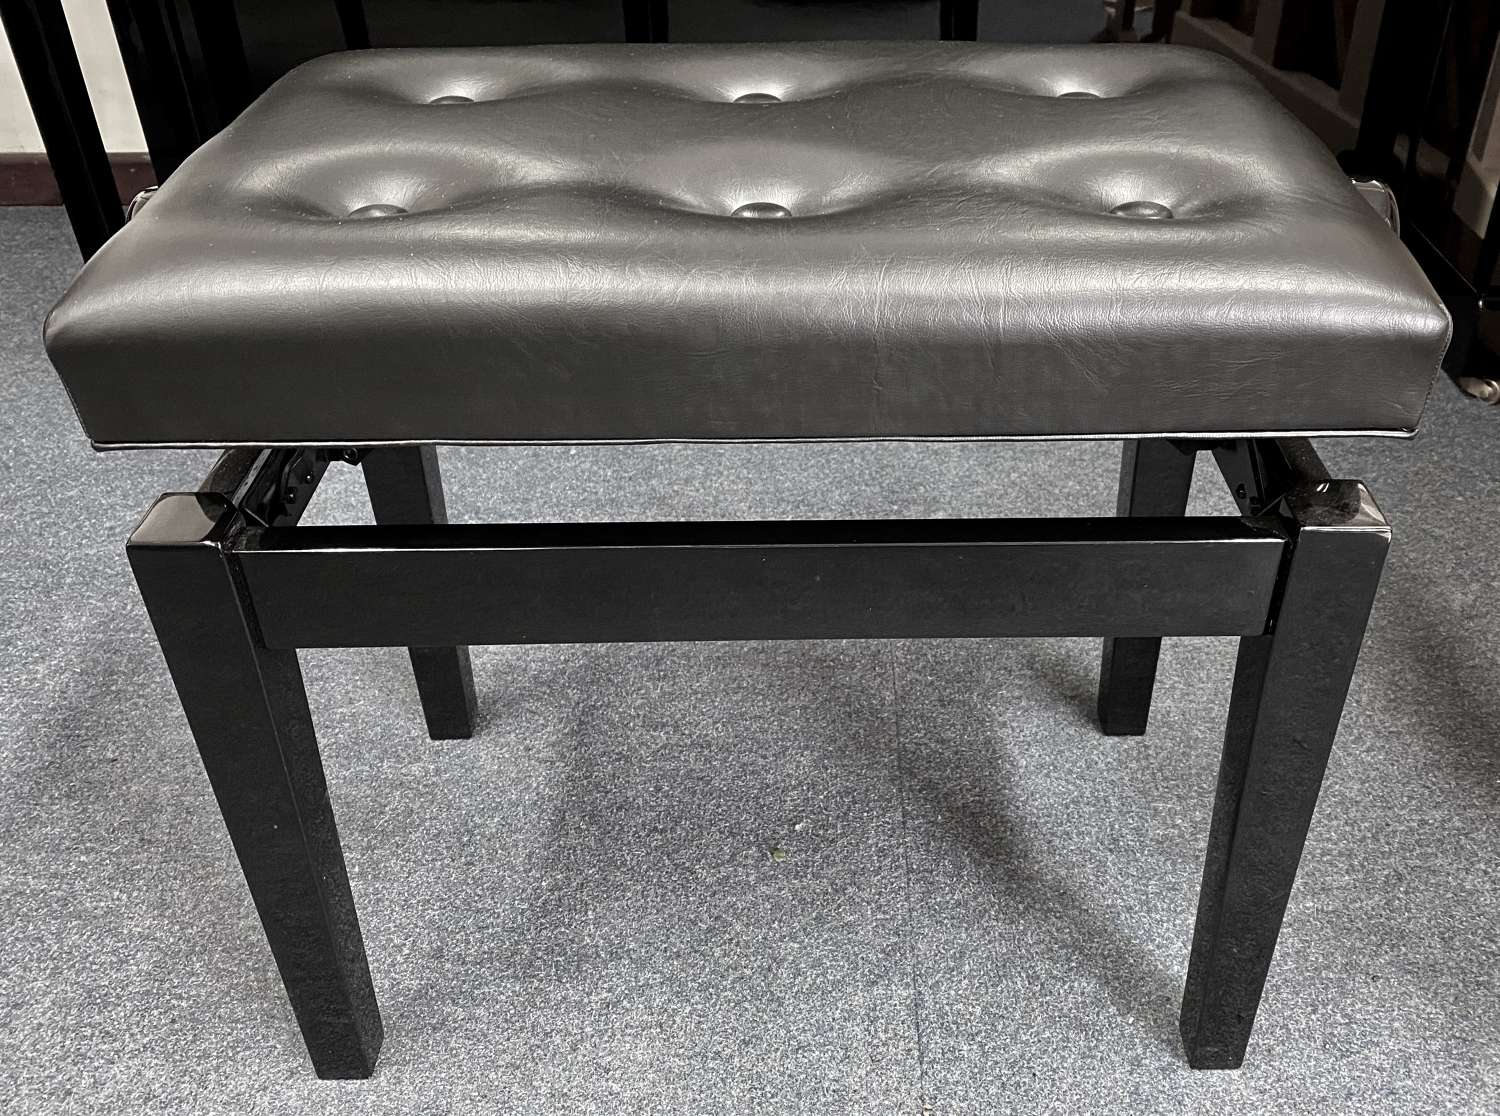 Adjustable solo stool black